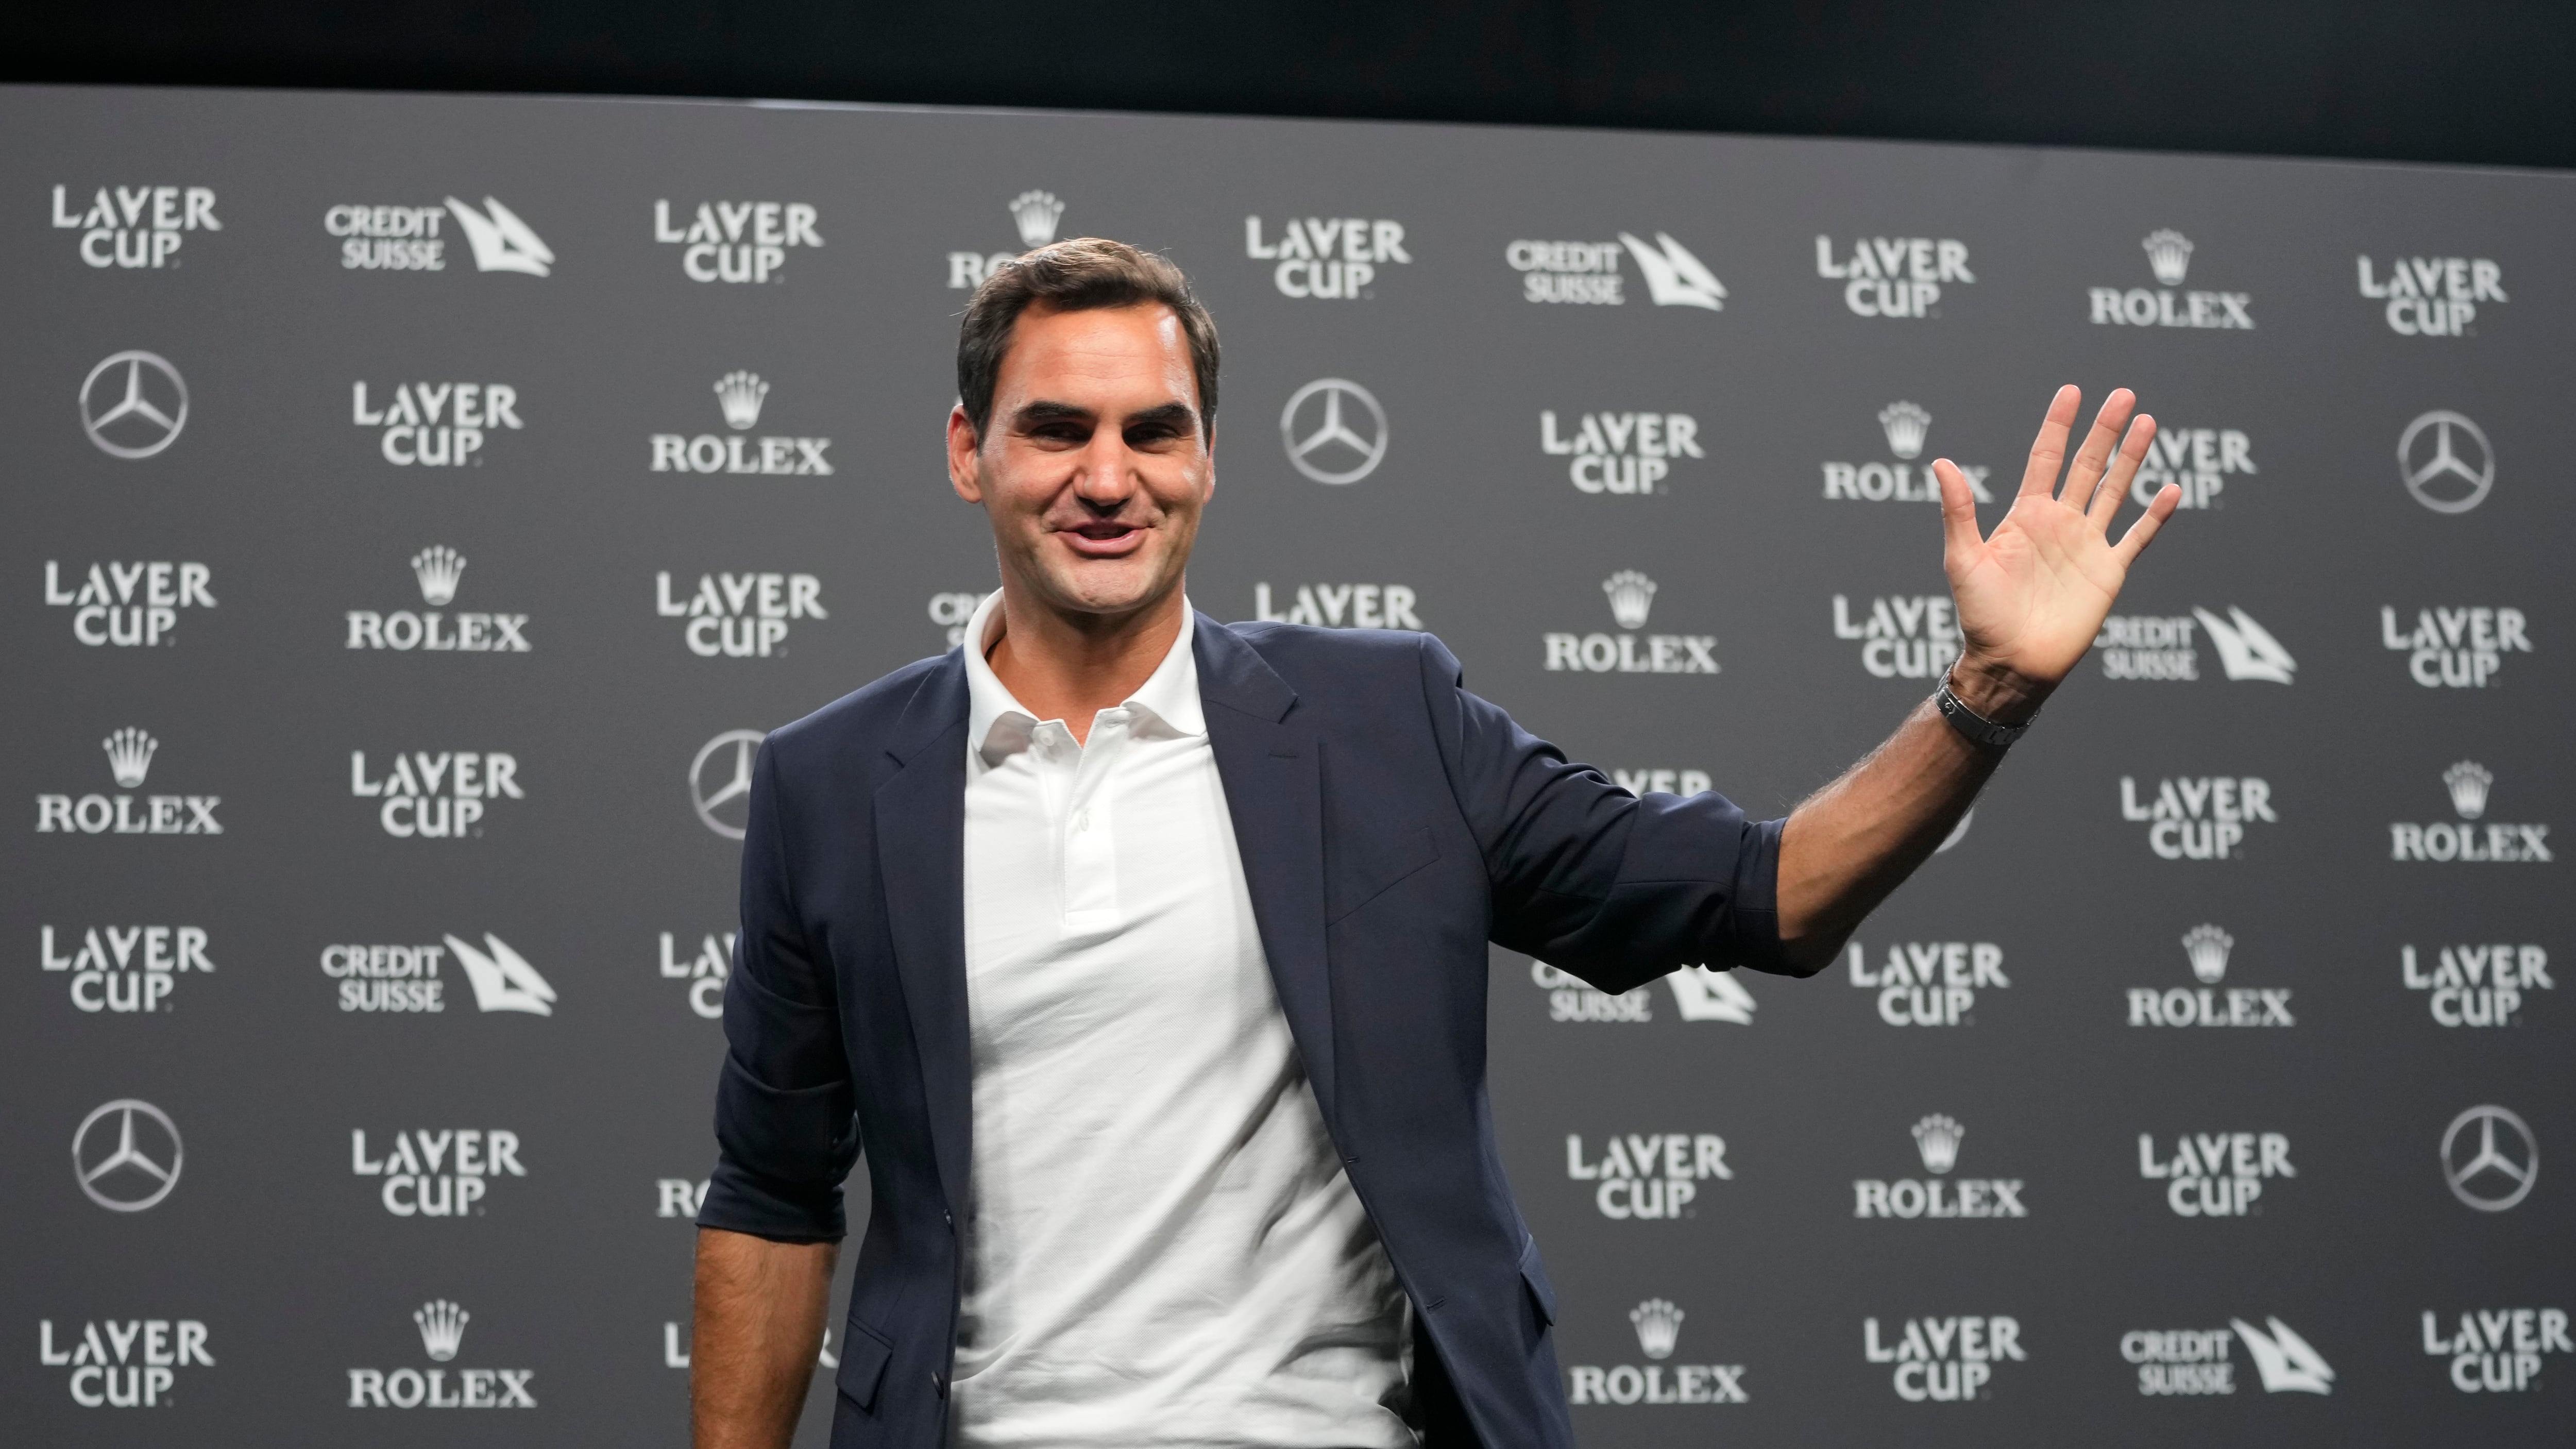 El suizo Roger Federer saluda durante una conferencia de prensa en Londres, el 21 de septiembre de 2022. (AP Foto/Kin Cheung)